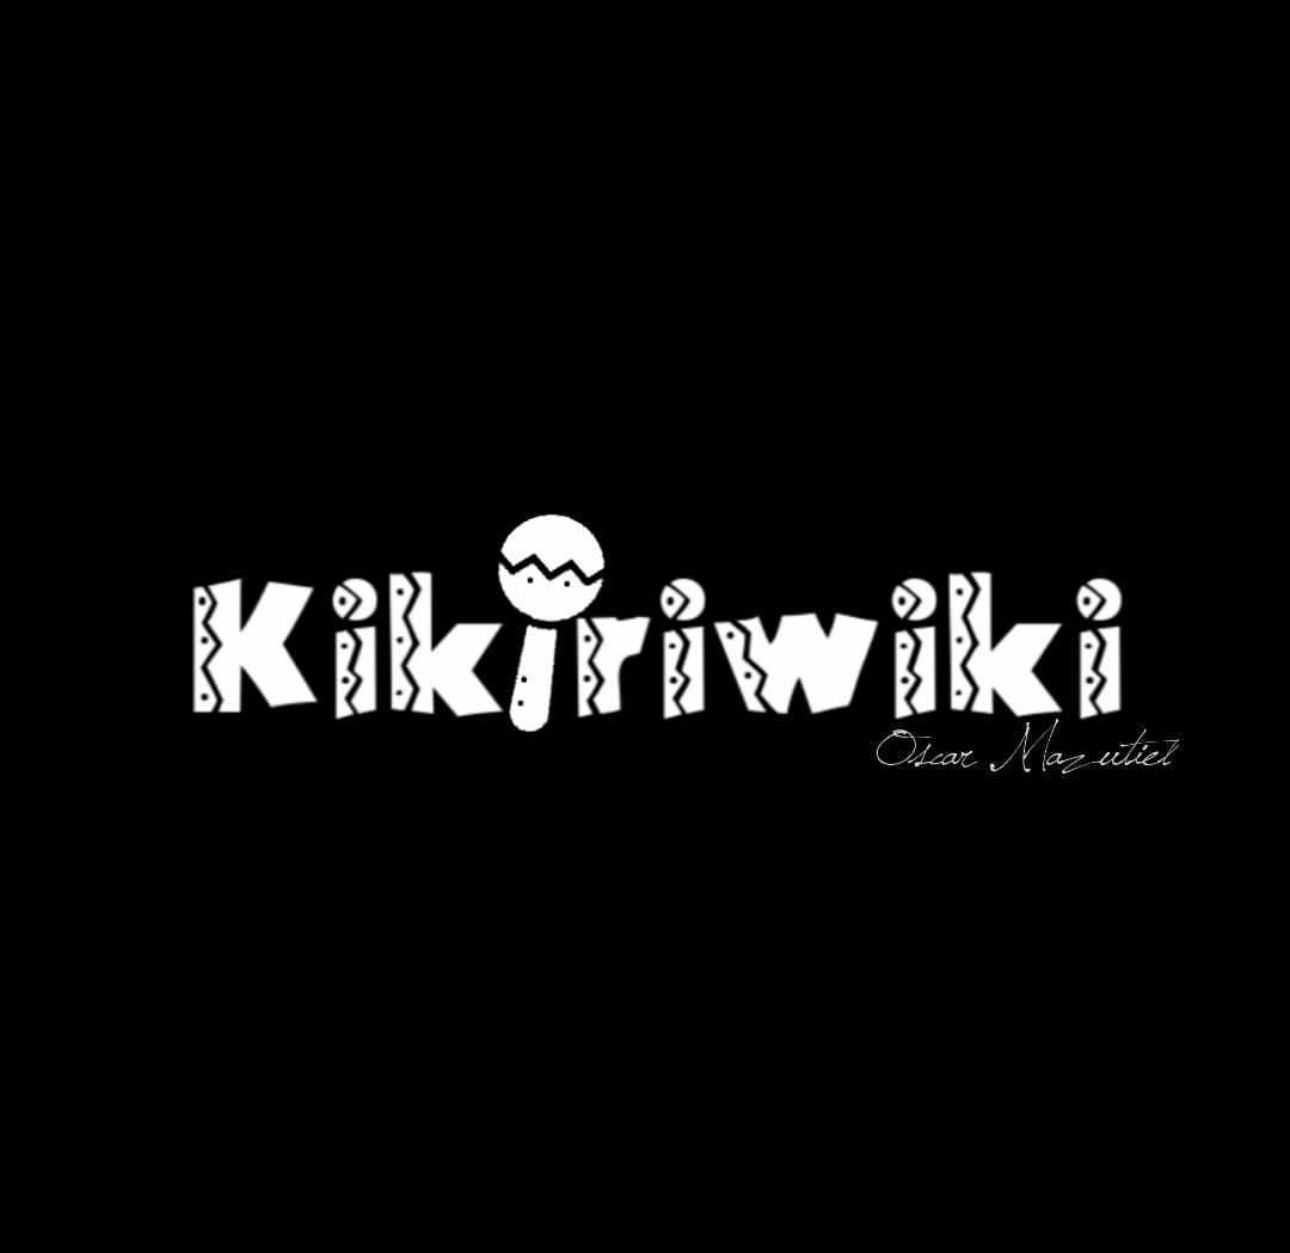 Talento Importado - Oficio Servicios - Kikiriwiki